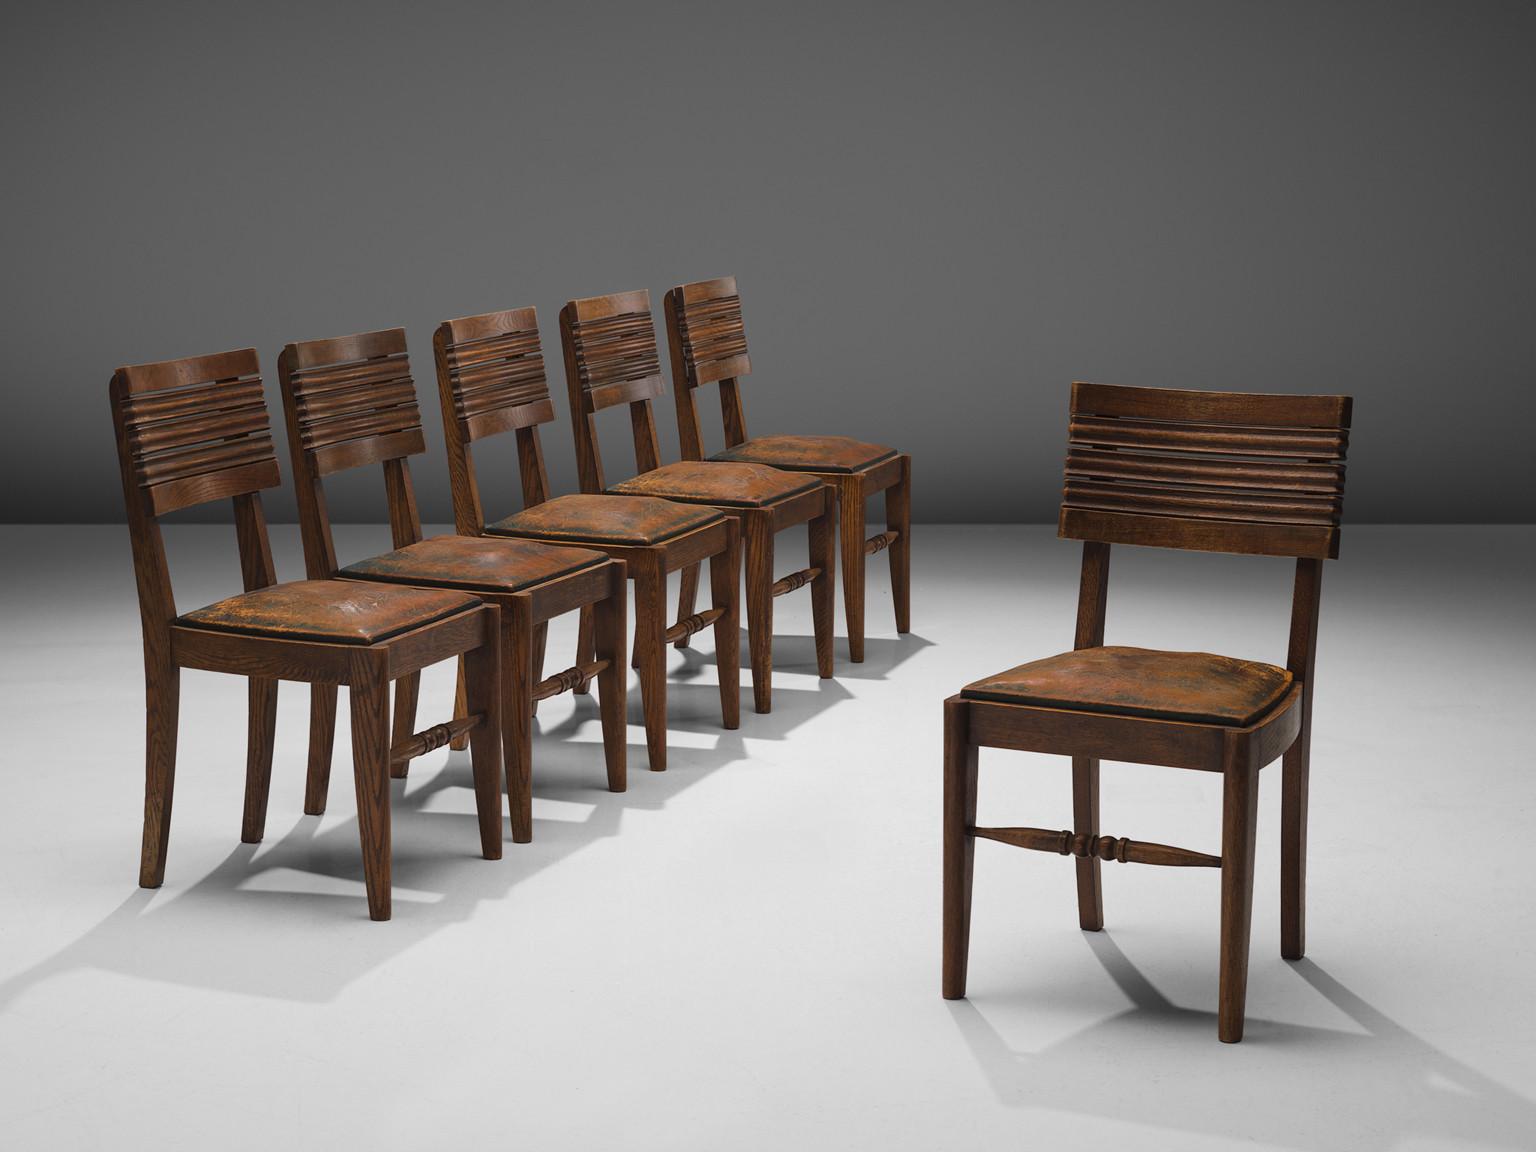 Gaston Poisson, ensemble de six chaises de salle à manger, chêne, cuir, France, années 1940.

Chaises de salle à manger en chêne massif, avec de belles sculptures détaillées et un superbe cuir patiné. Le dossier de la chaise est constitué de cinq